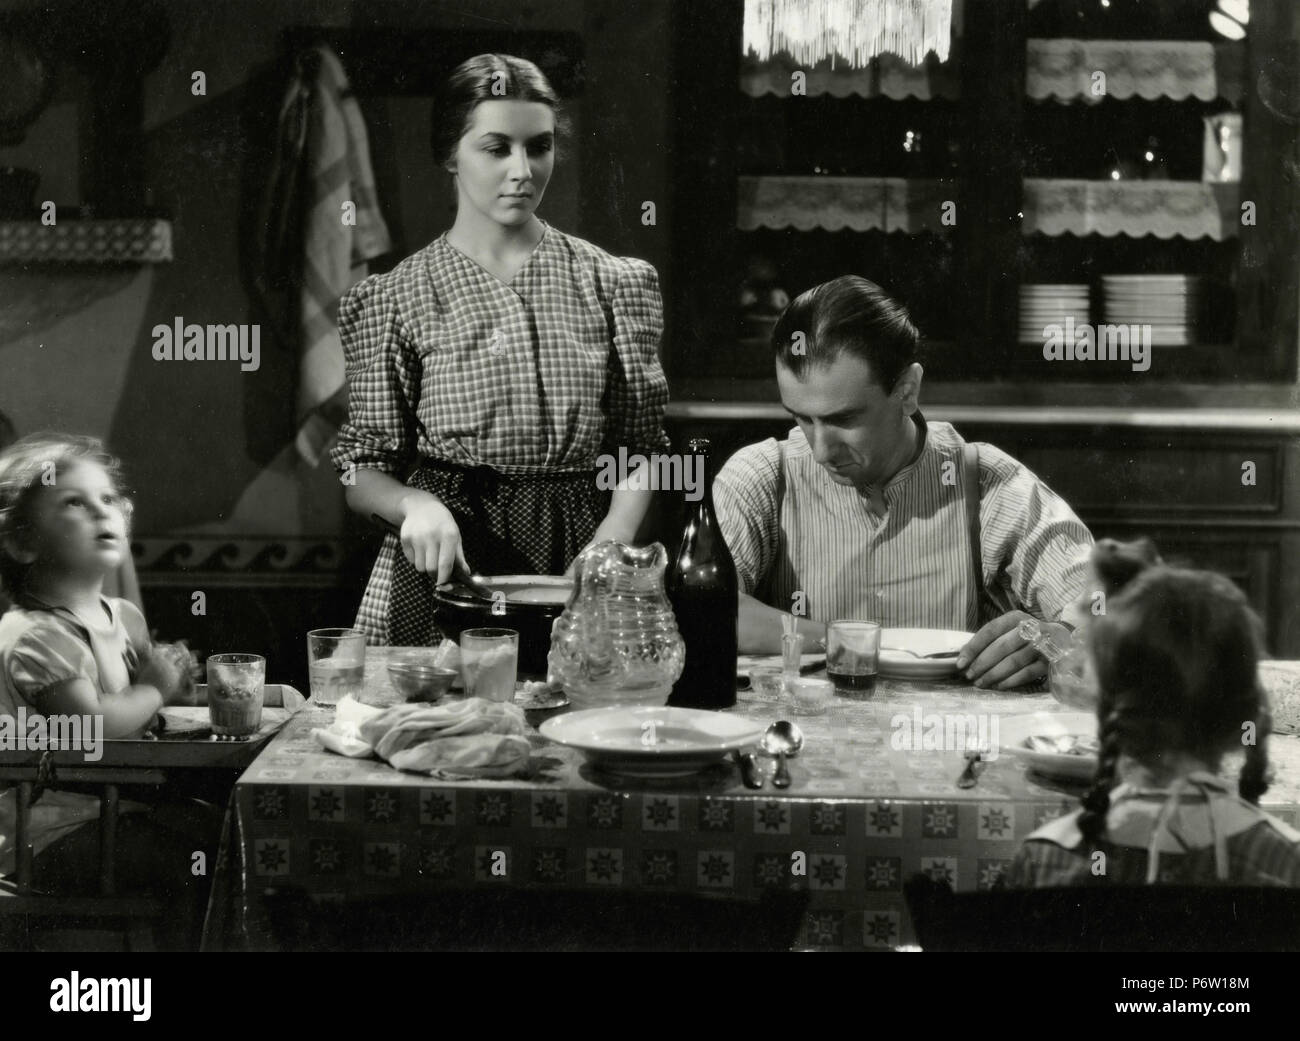 Famille pauvre à la table de dîner : film non identifié, probablement néoréalisme italien, 1960 Banque D'Images